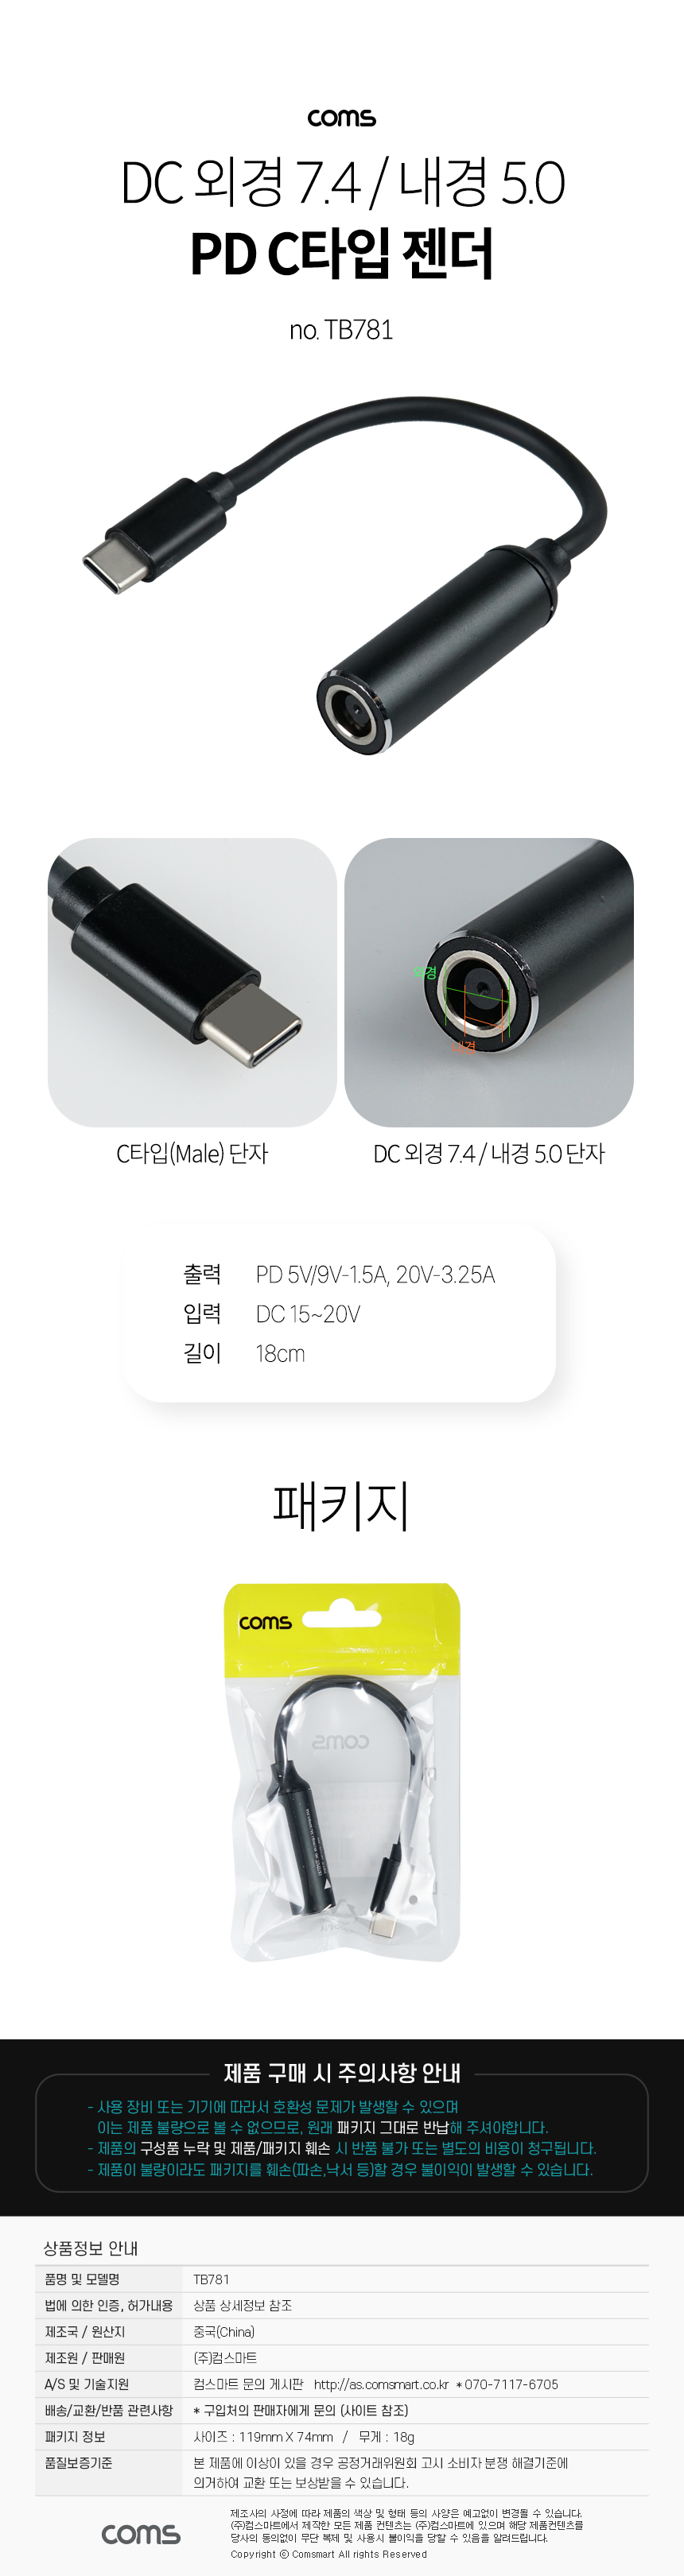 USB Type C PD 노트북 전원 변환 충전 케이블 DC 외경 7.4 내경 5.0 C타입 18cm